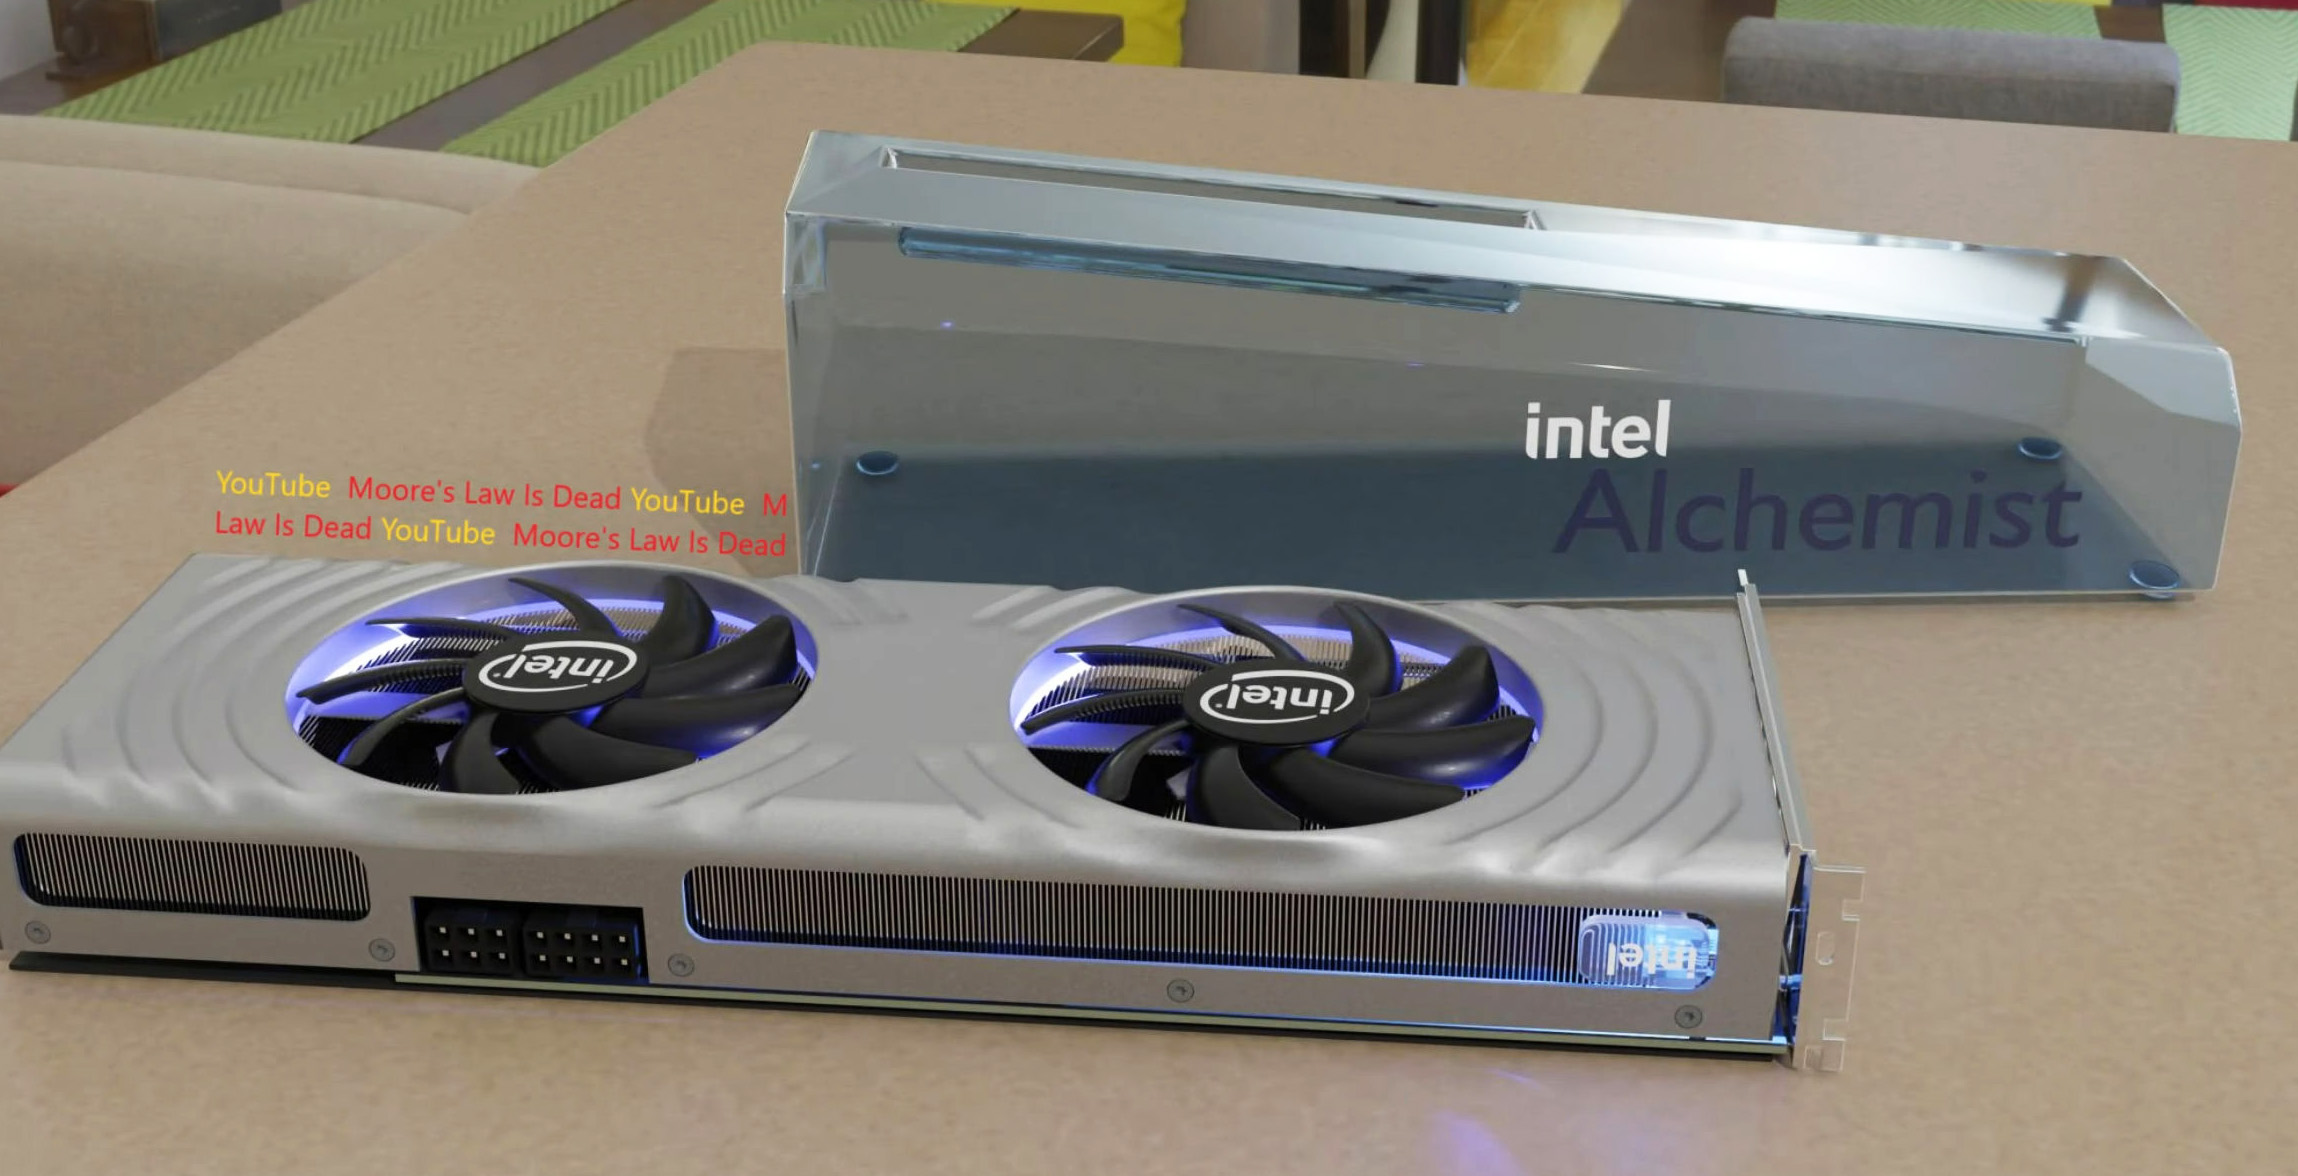 Показан эталонный дизайн флагманской видеокарты Intel Arc Alchemist нового поколения